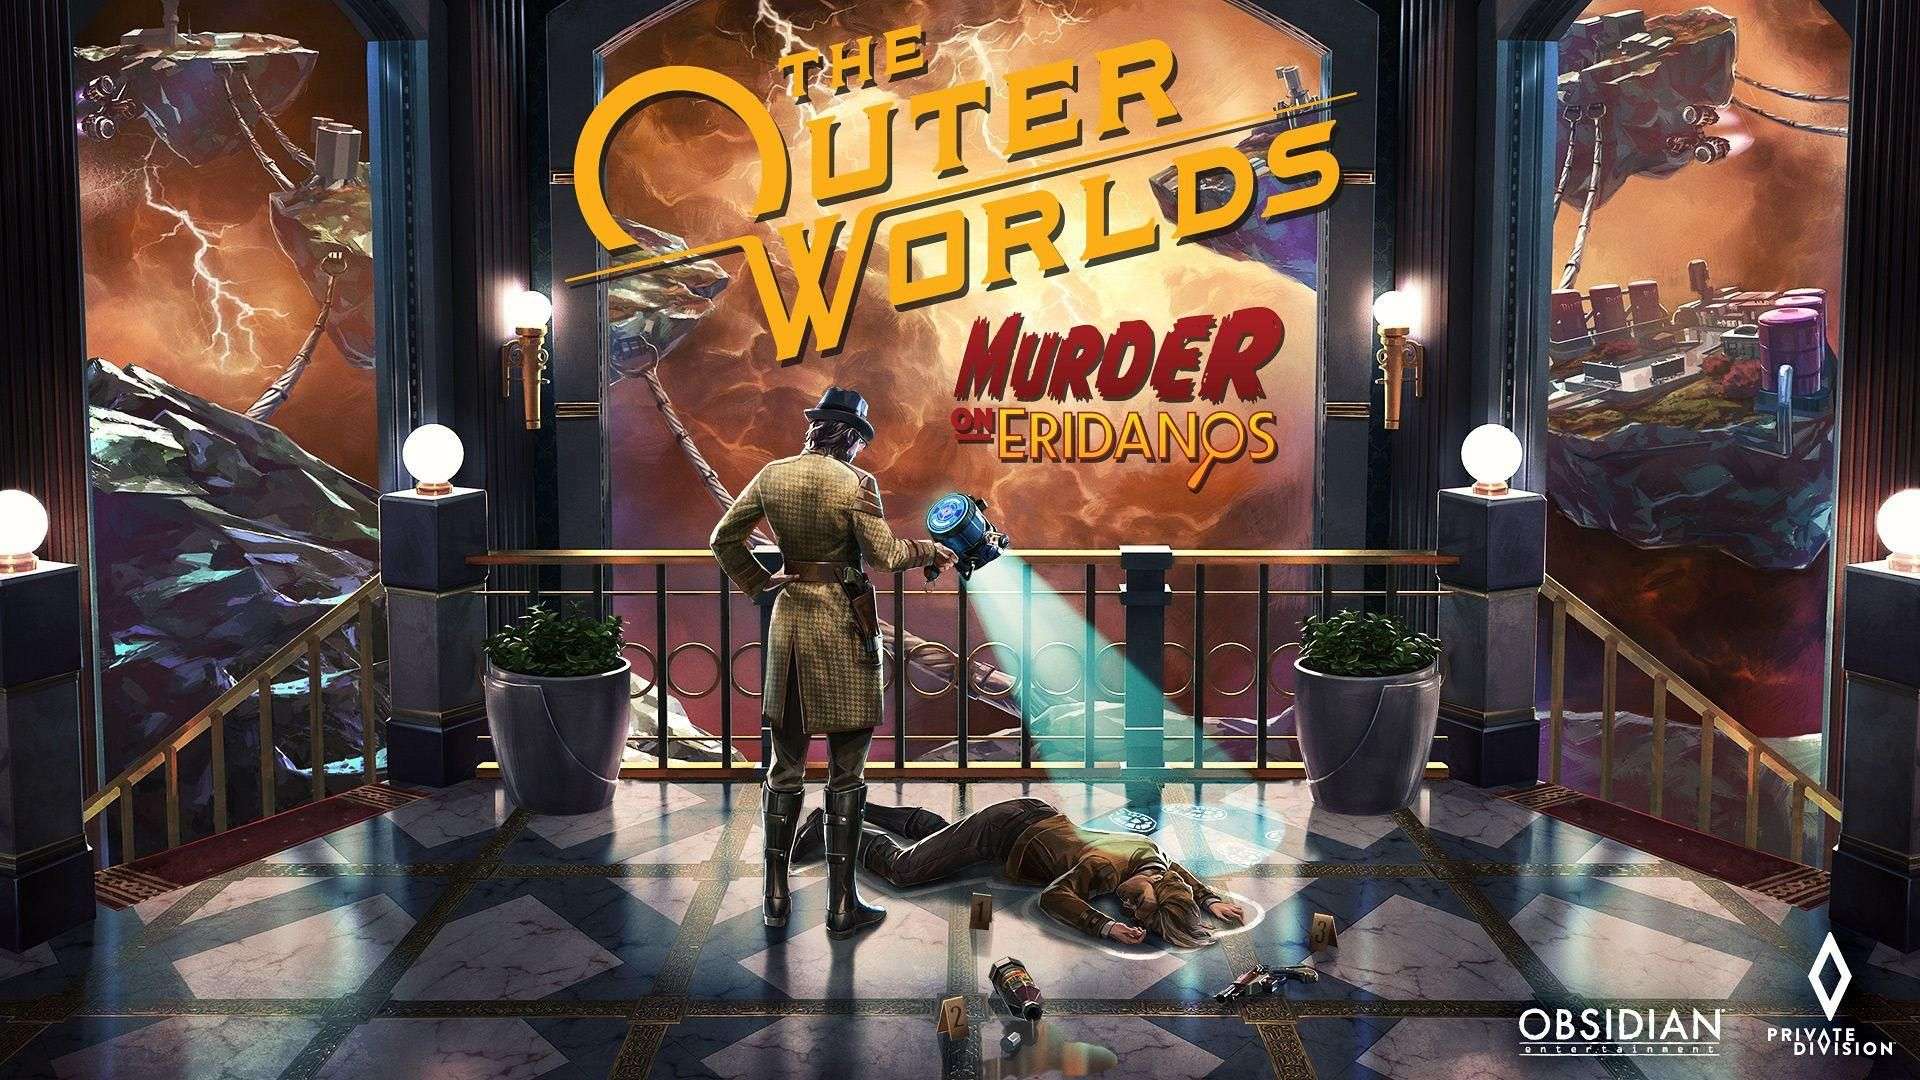 El próximo DLC de The Outer Worlds ya tiene fecha de lanzamiento